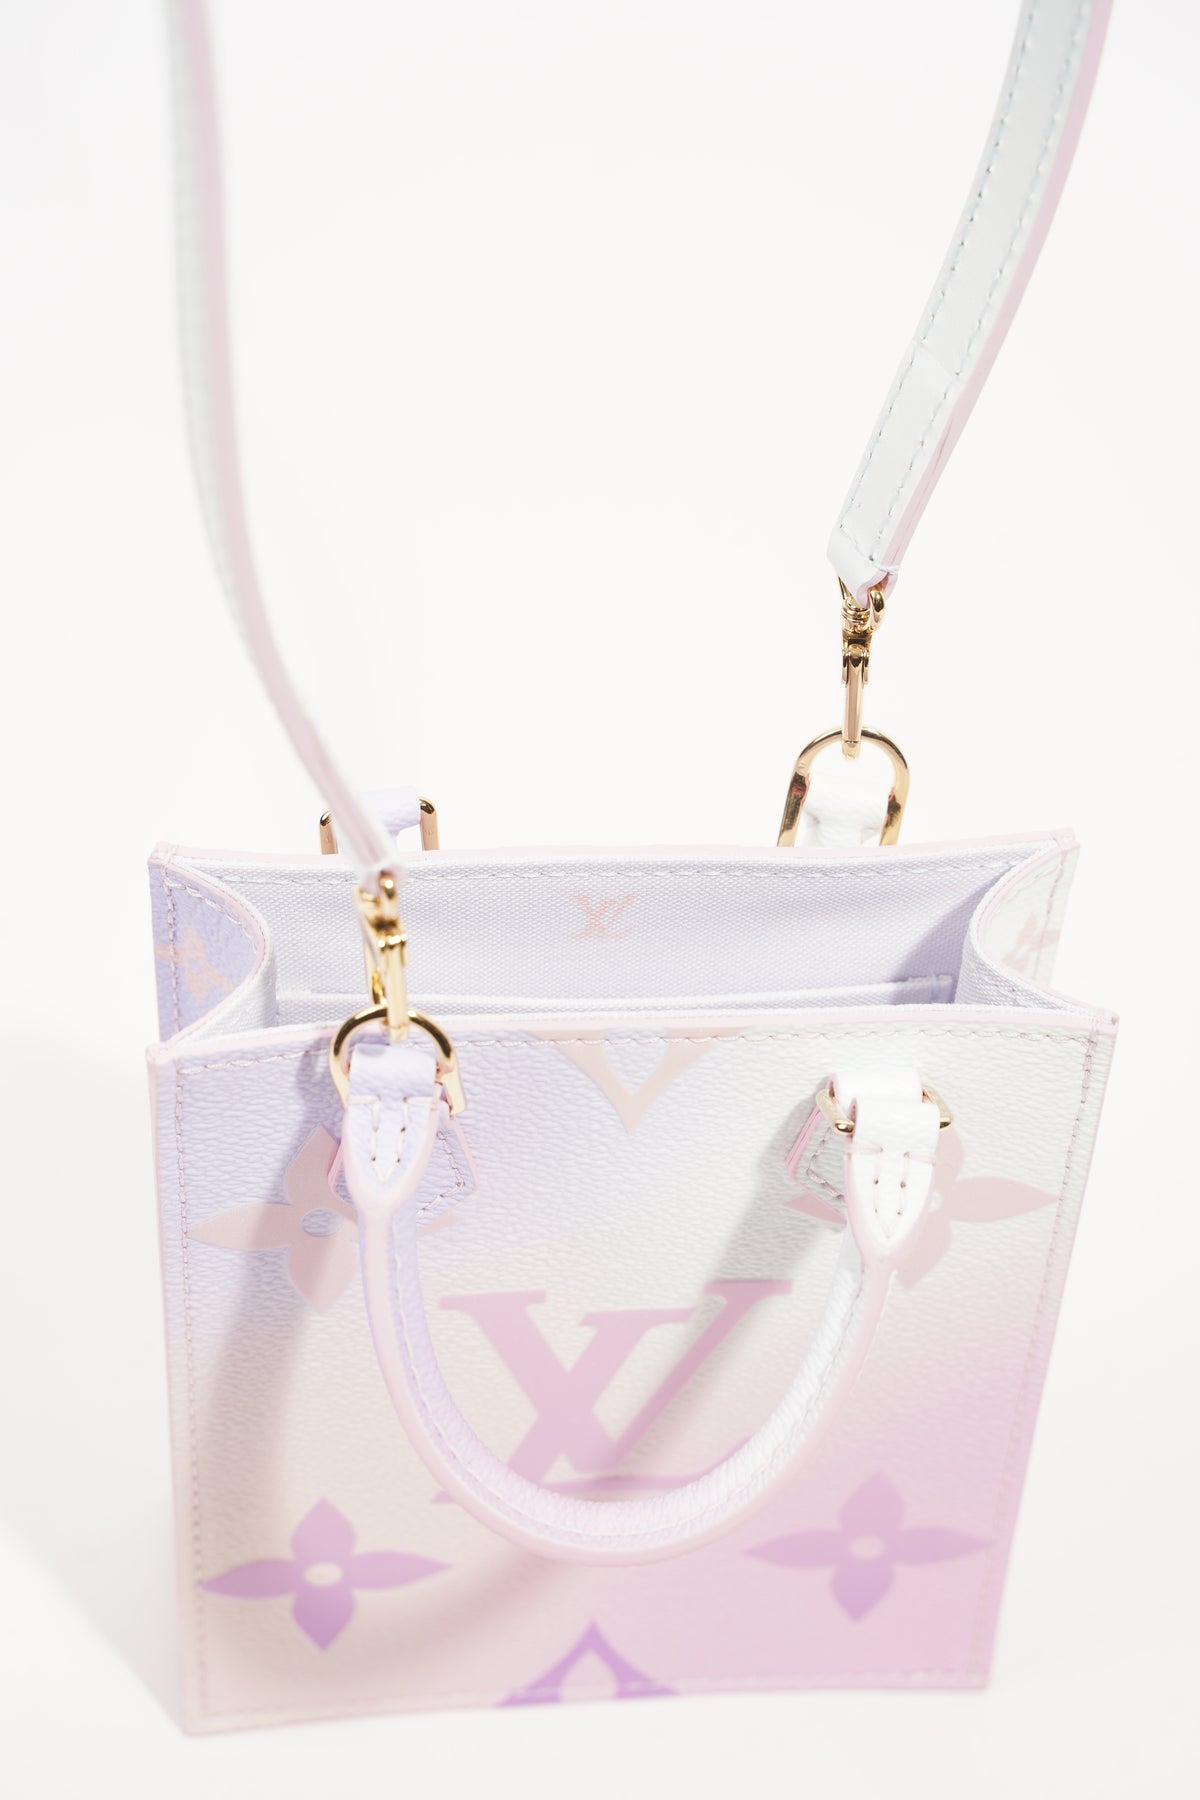 New Louis Vuitton LV Petit Sac Plat Small Tote Bag Sunrise Pastel